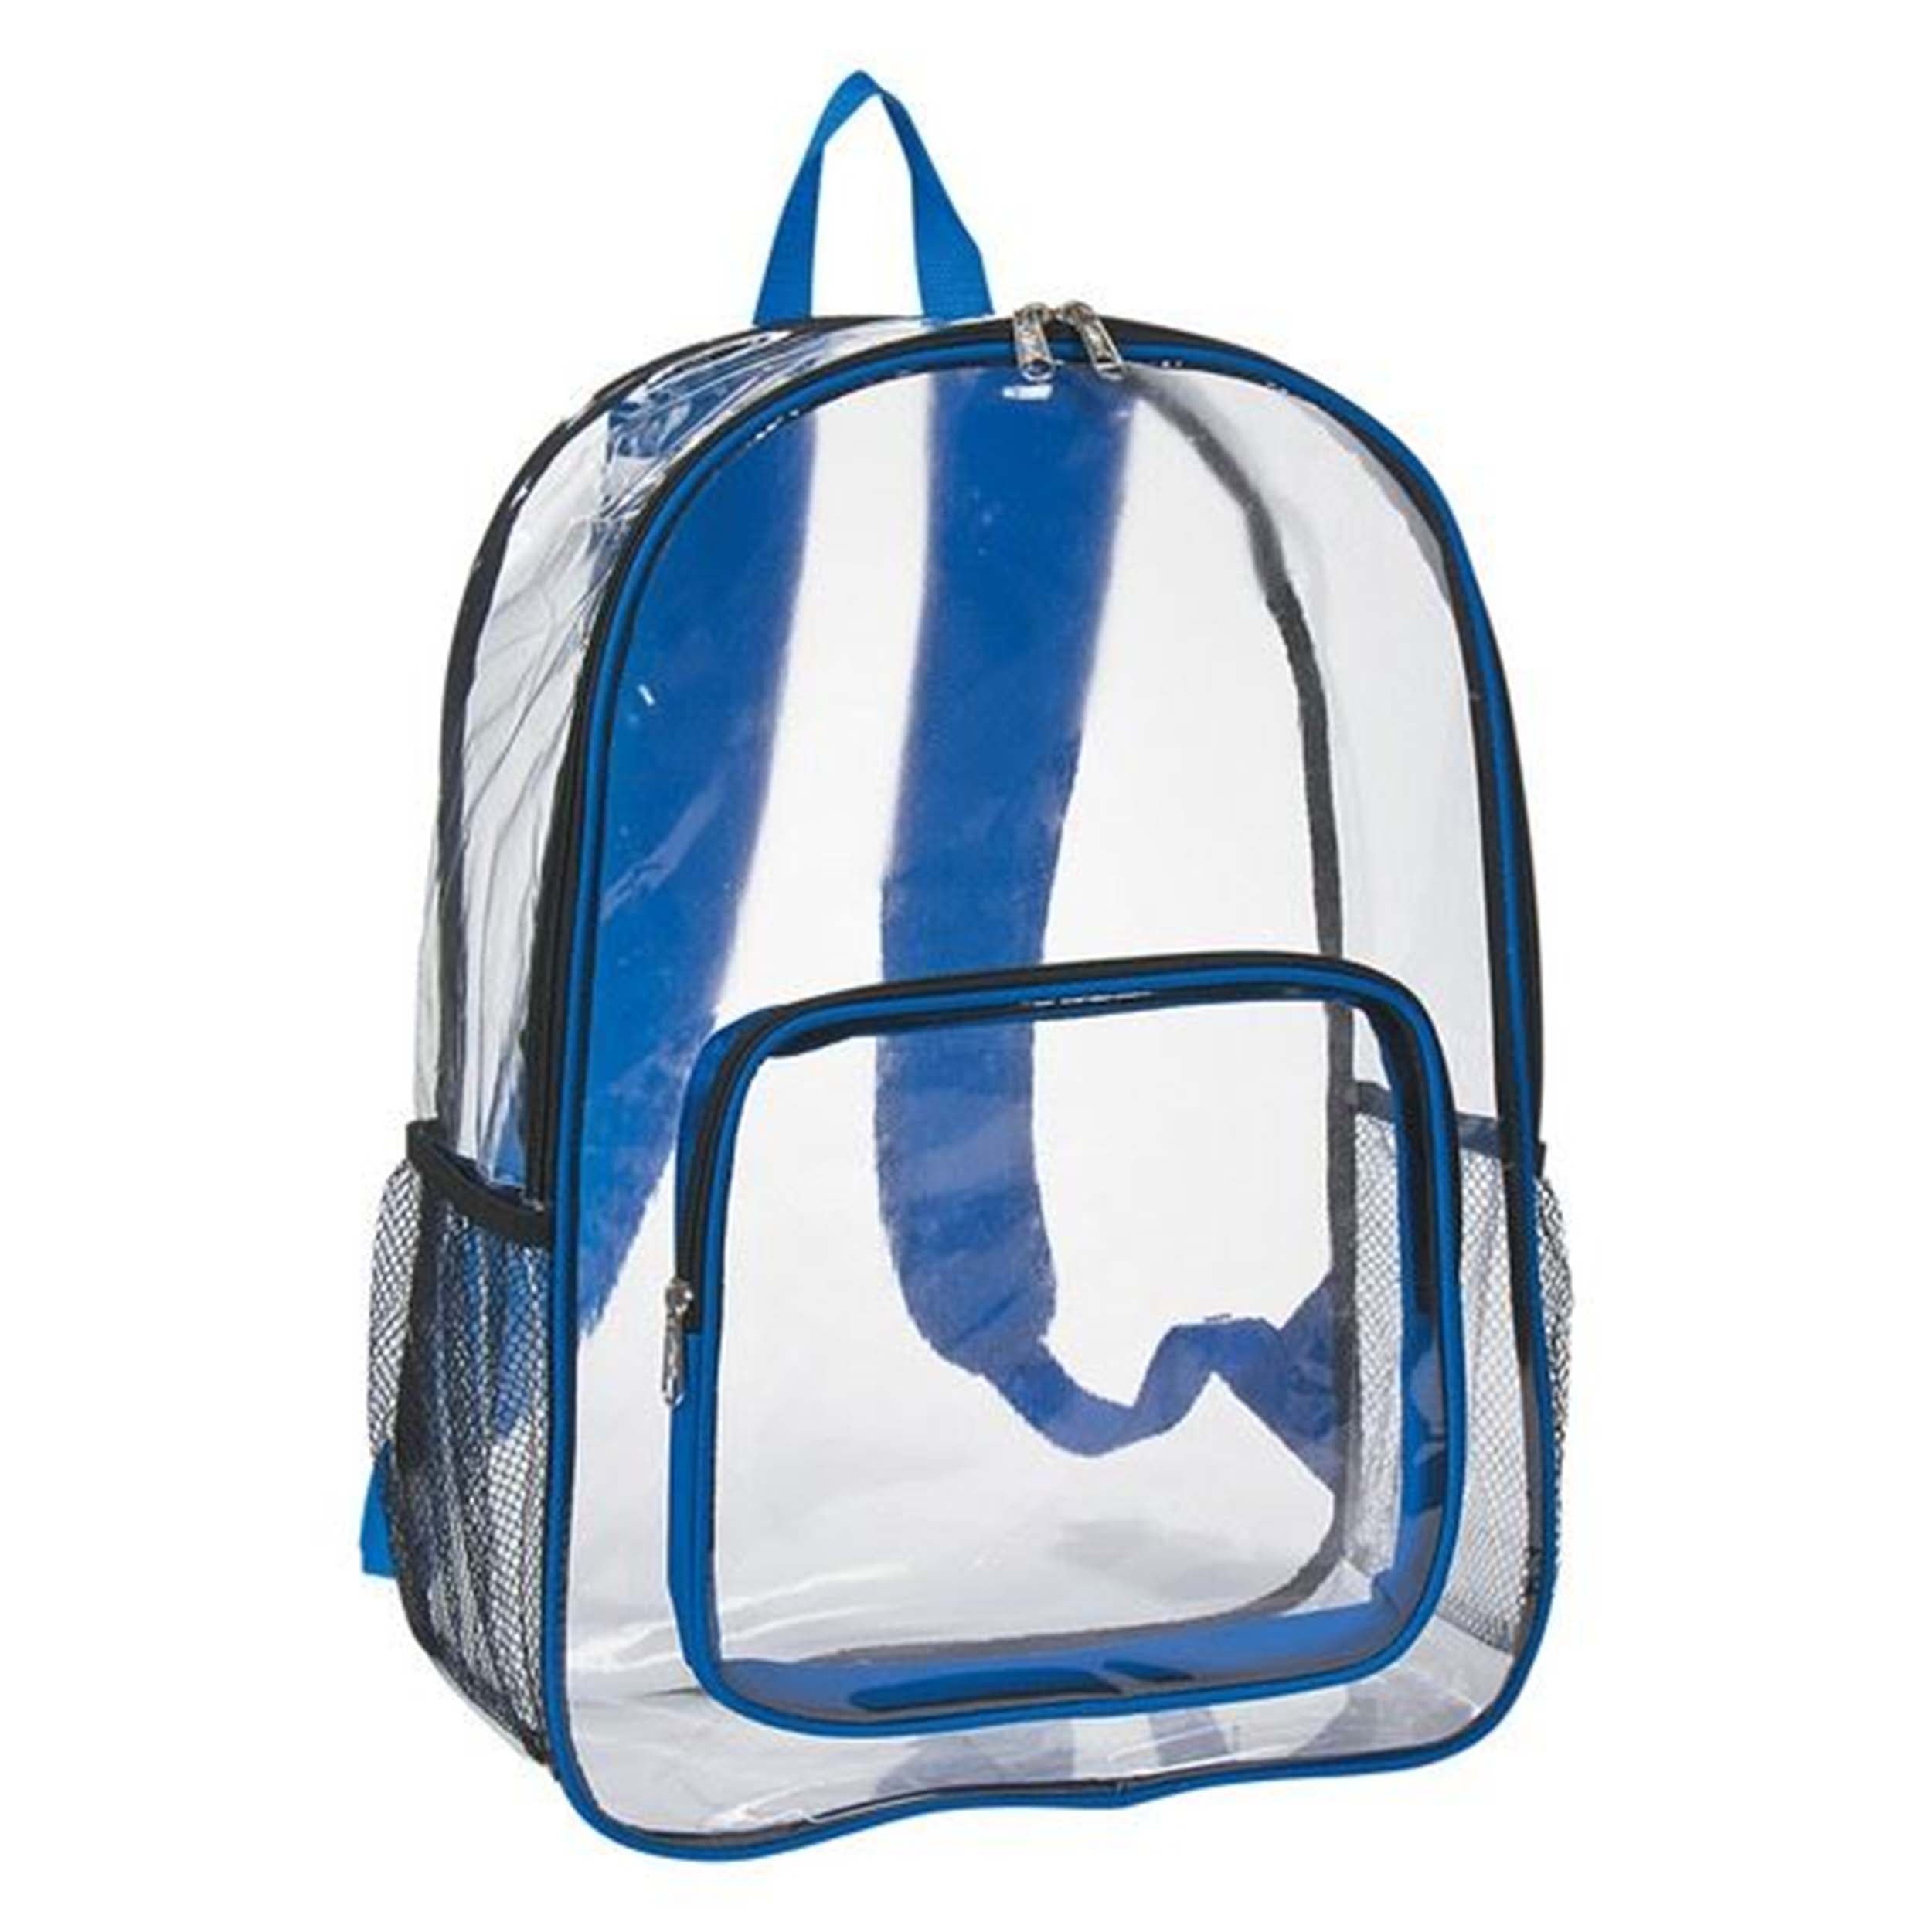 Buy school bag in Sri Lanka for Best Price